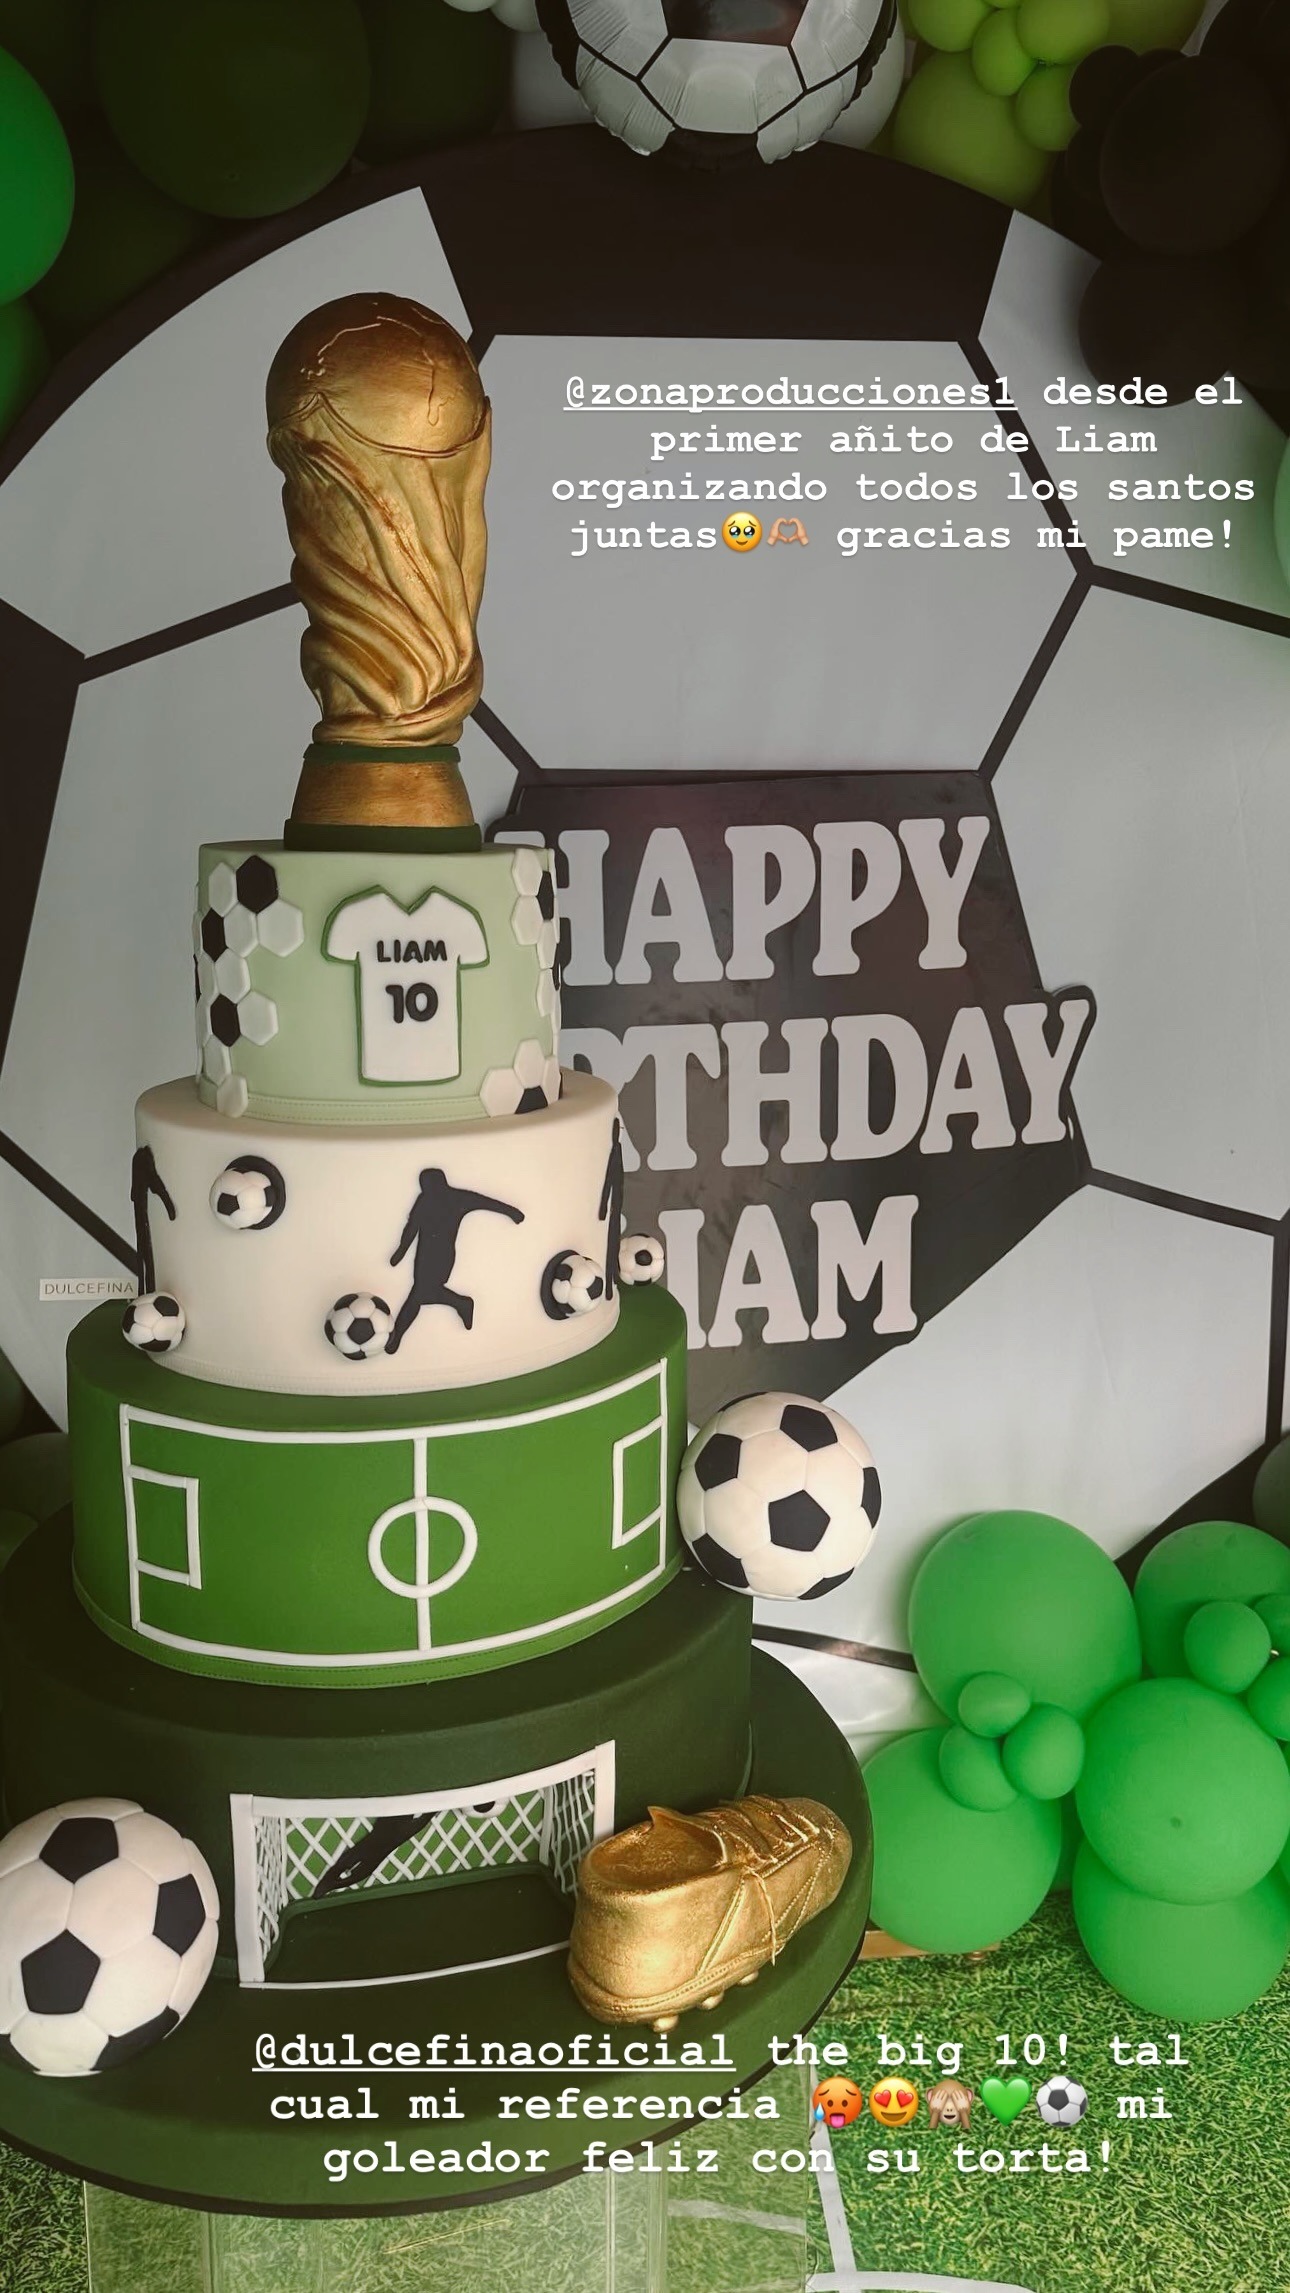 La torta elegida para celebrar a Liam tenía como temática la Copa Mundial de Fútbol/Foto: Instagram